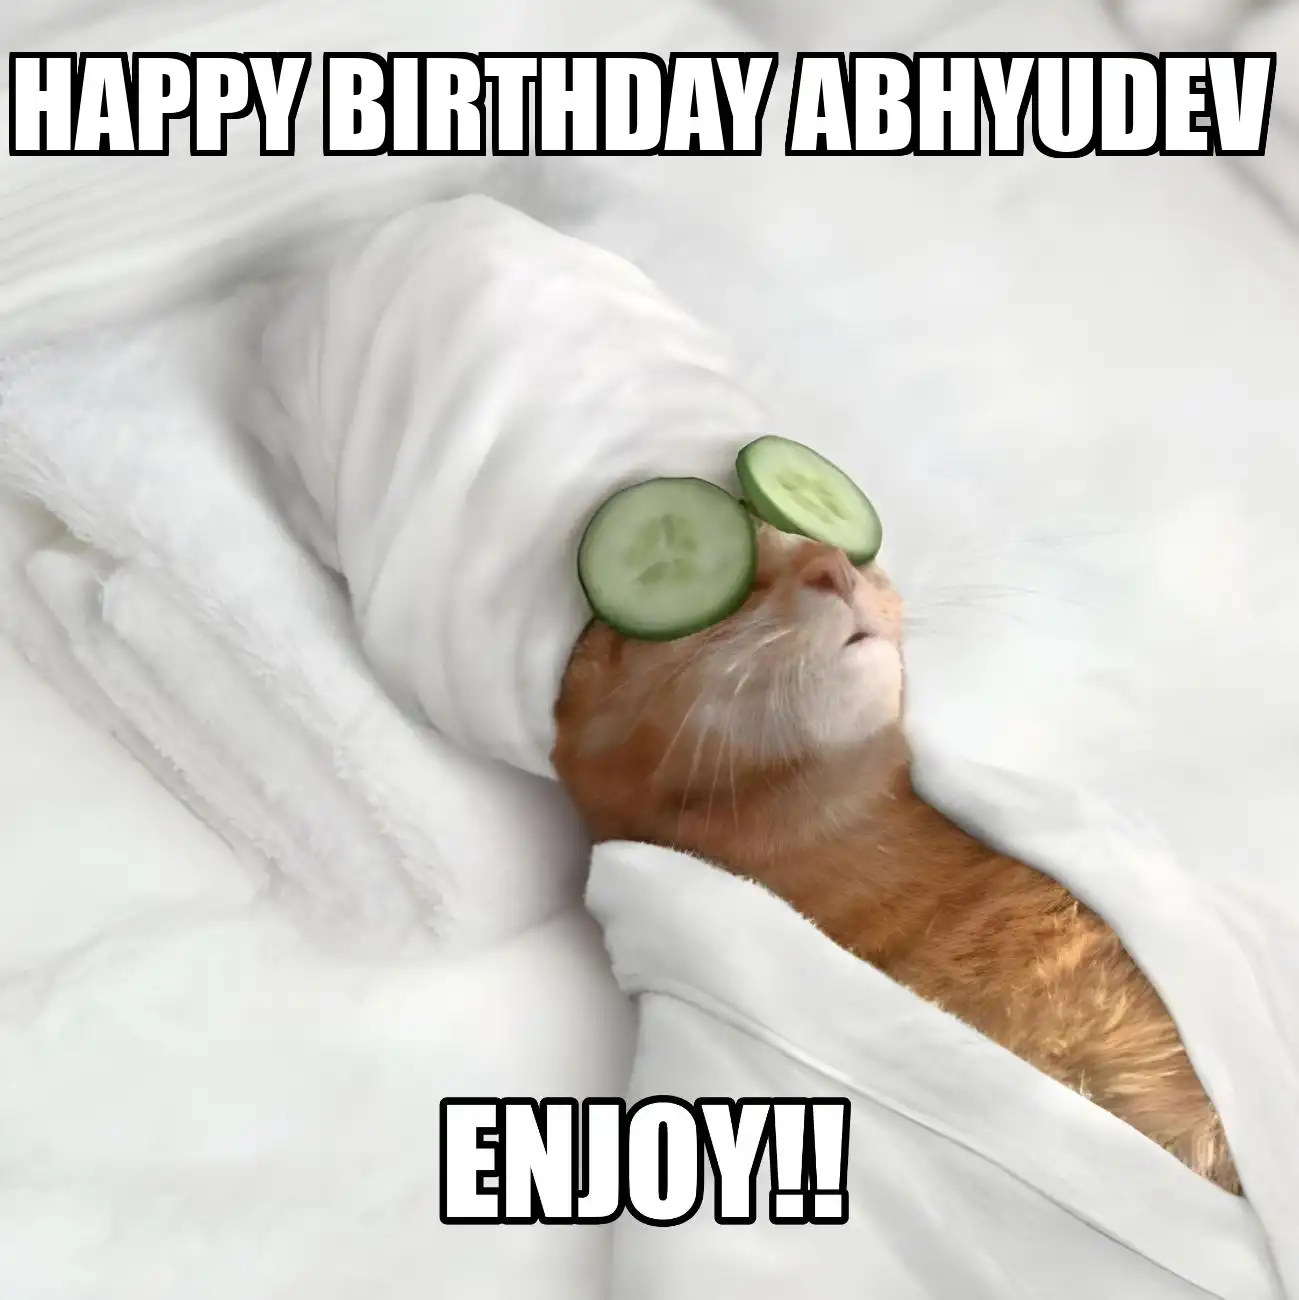 Happy Birthday Abhyudev Enjoy Cat Meme